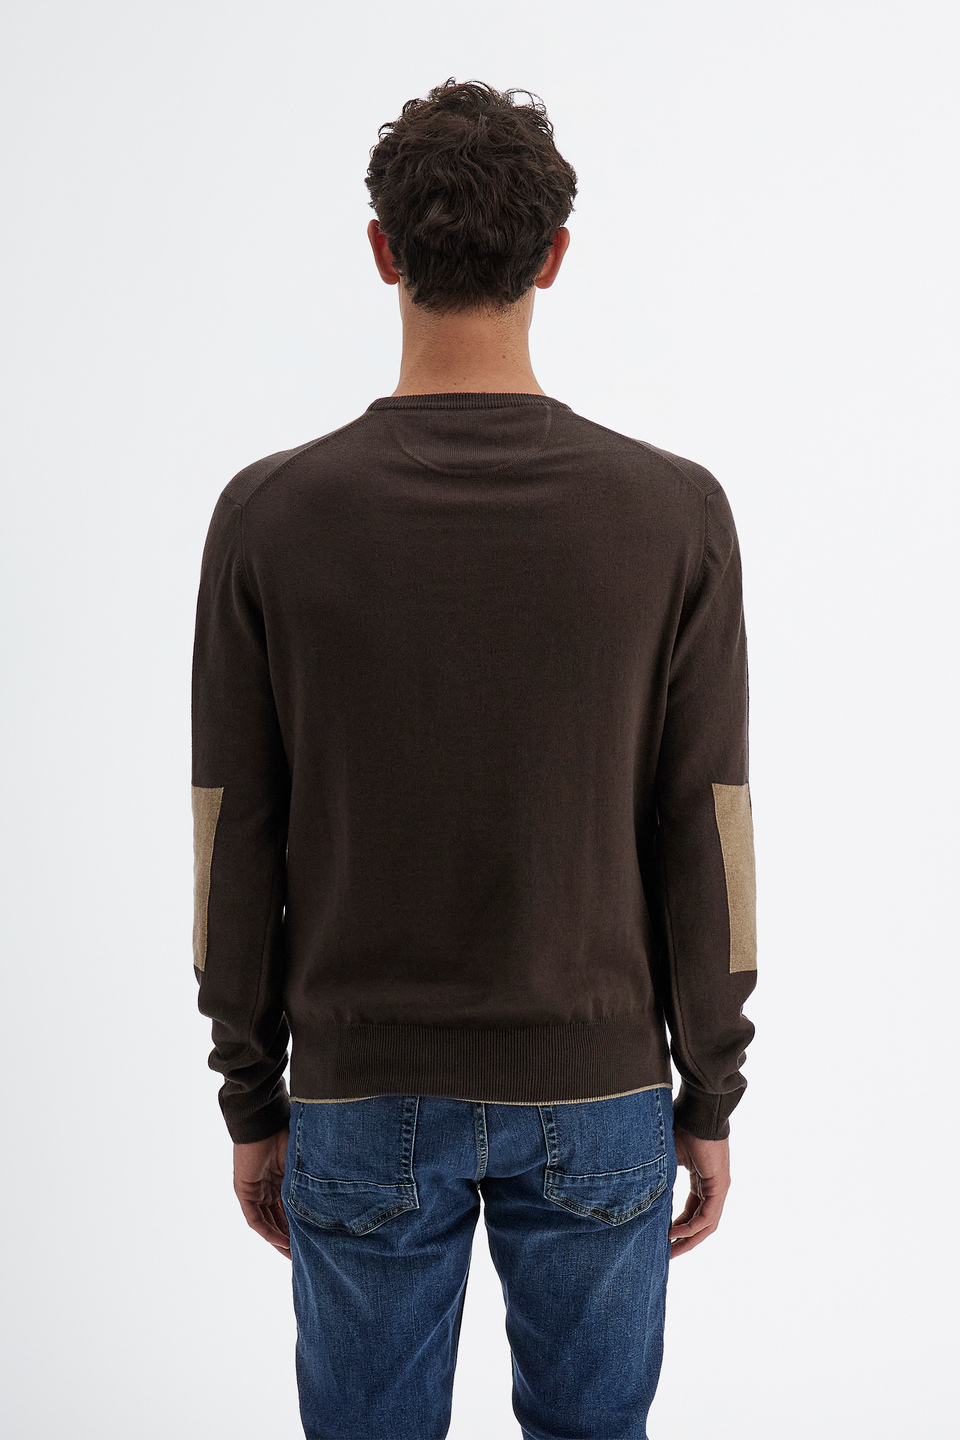 Maglia tricot da uomo a maniche lunghe in cotone misto lana regular fit girocollo | La Martina - Official Online Shop